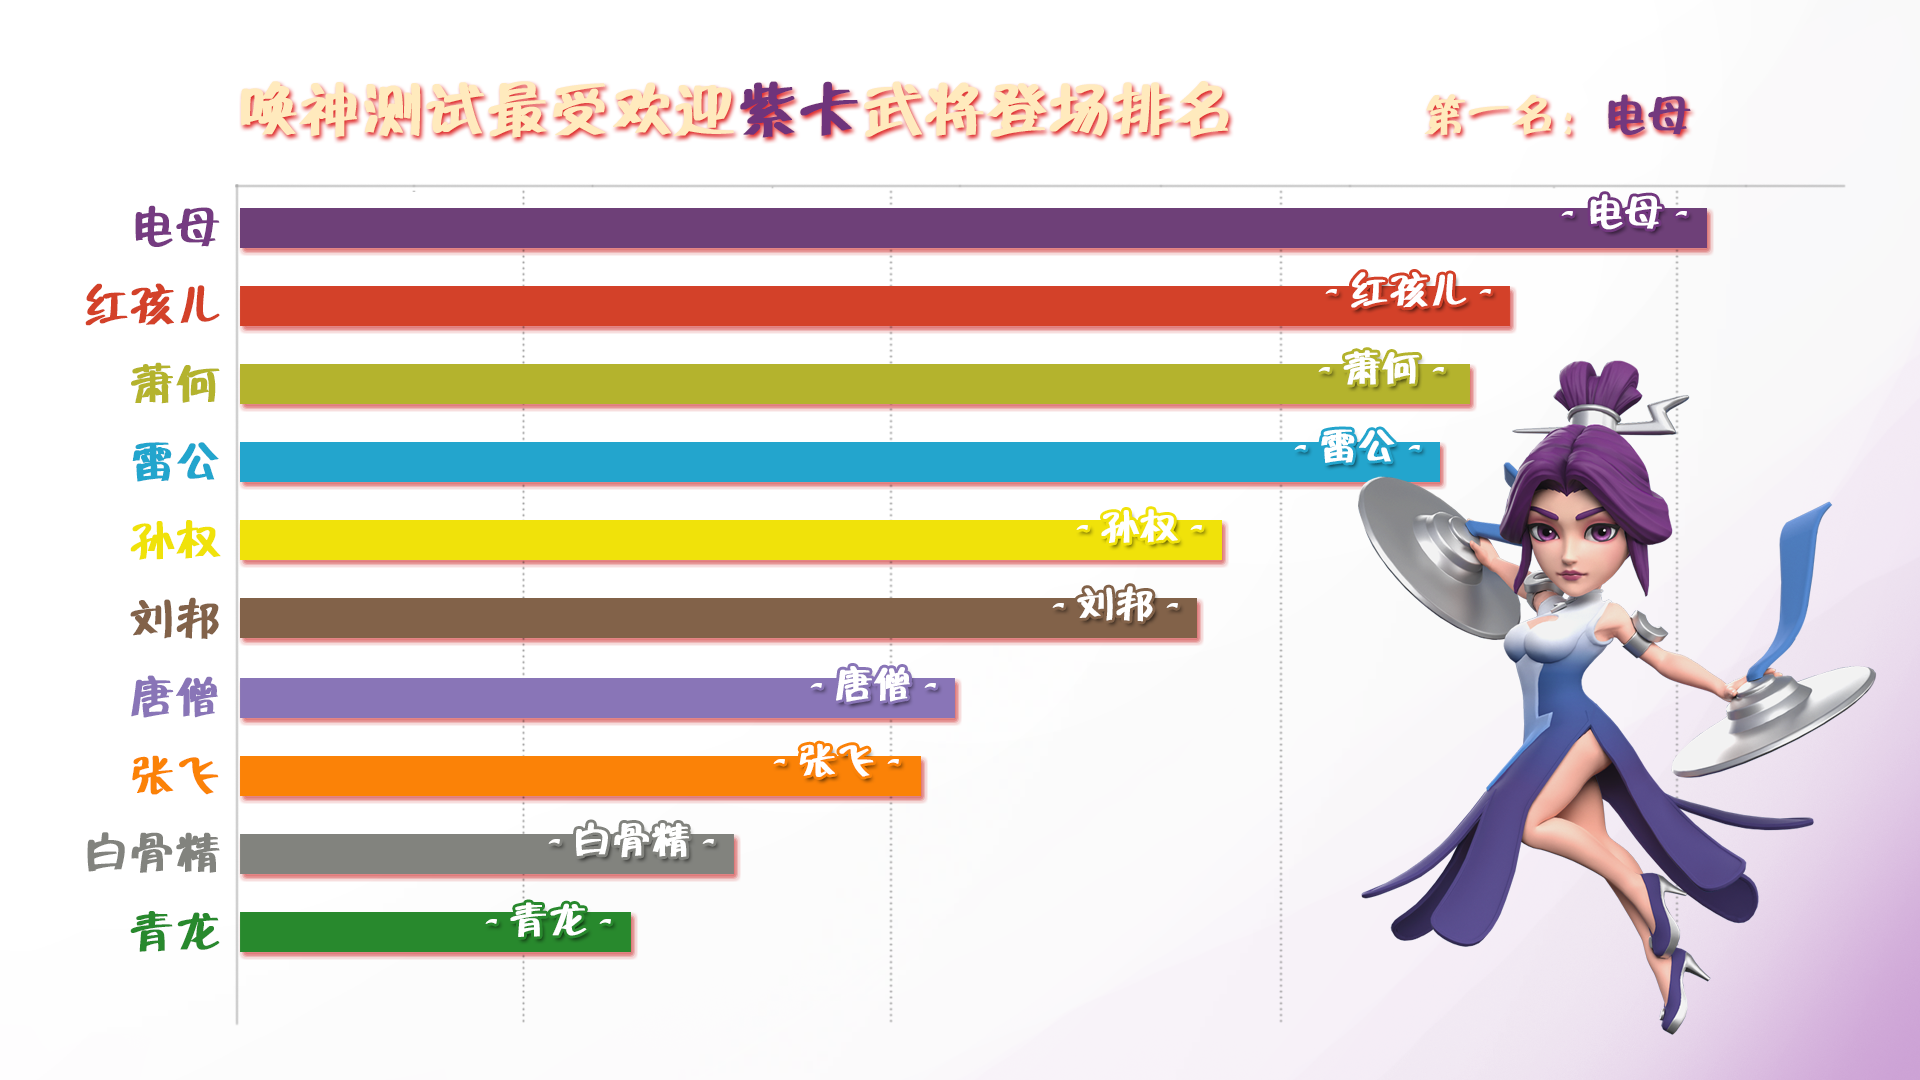 唤神测试最受欢迎的紫卡武将排名